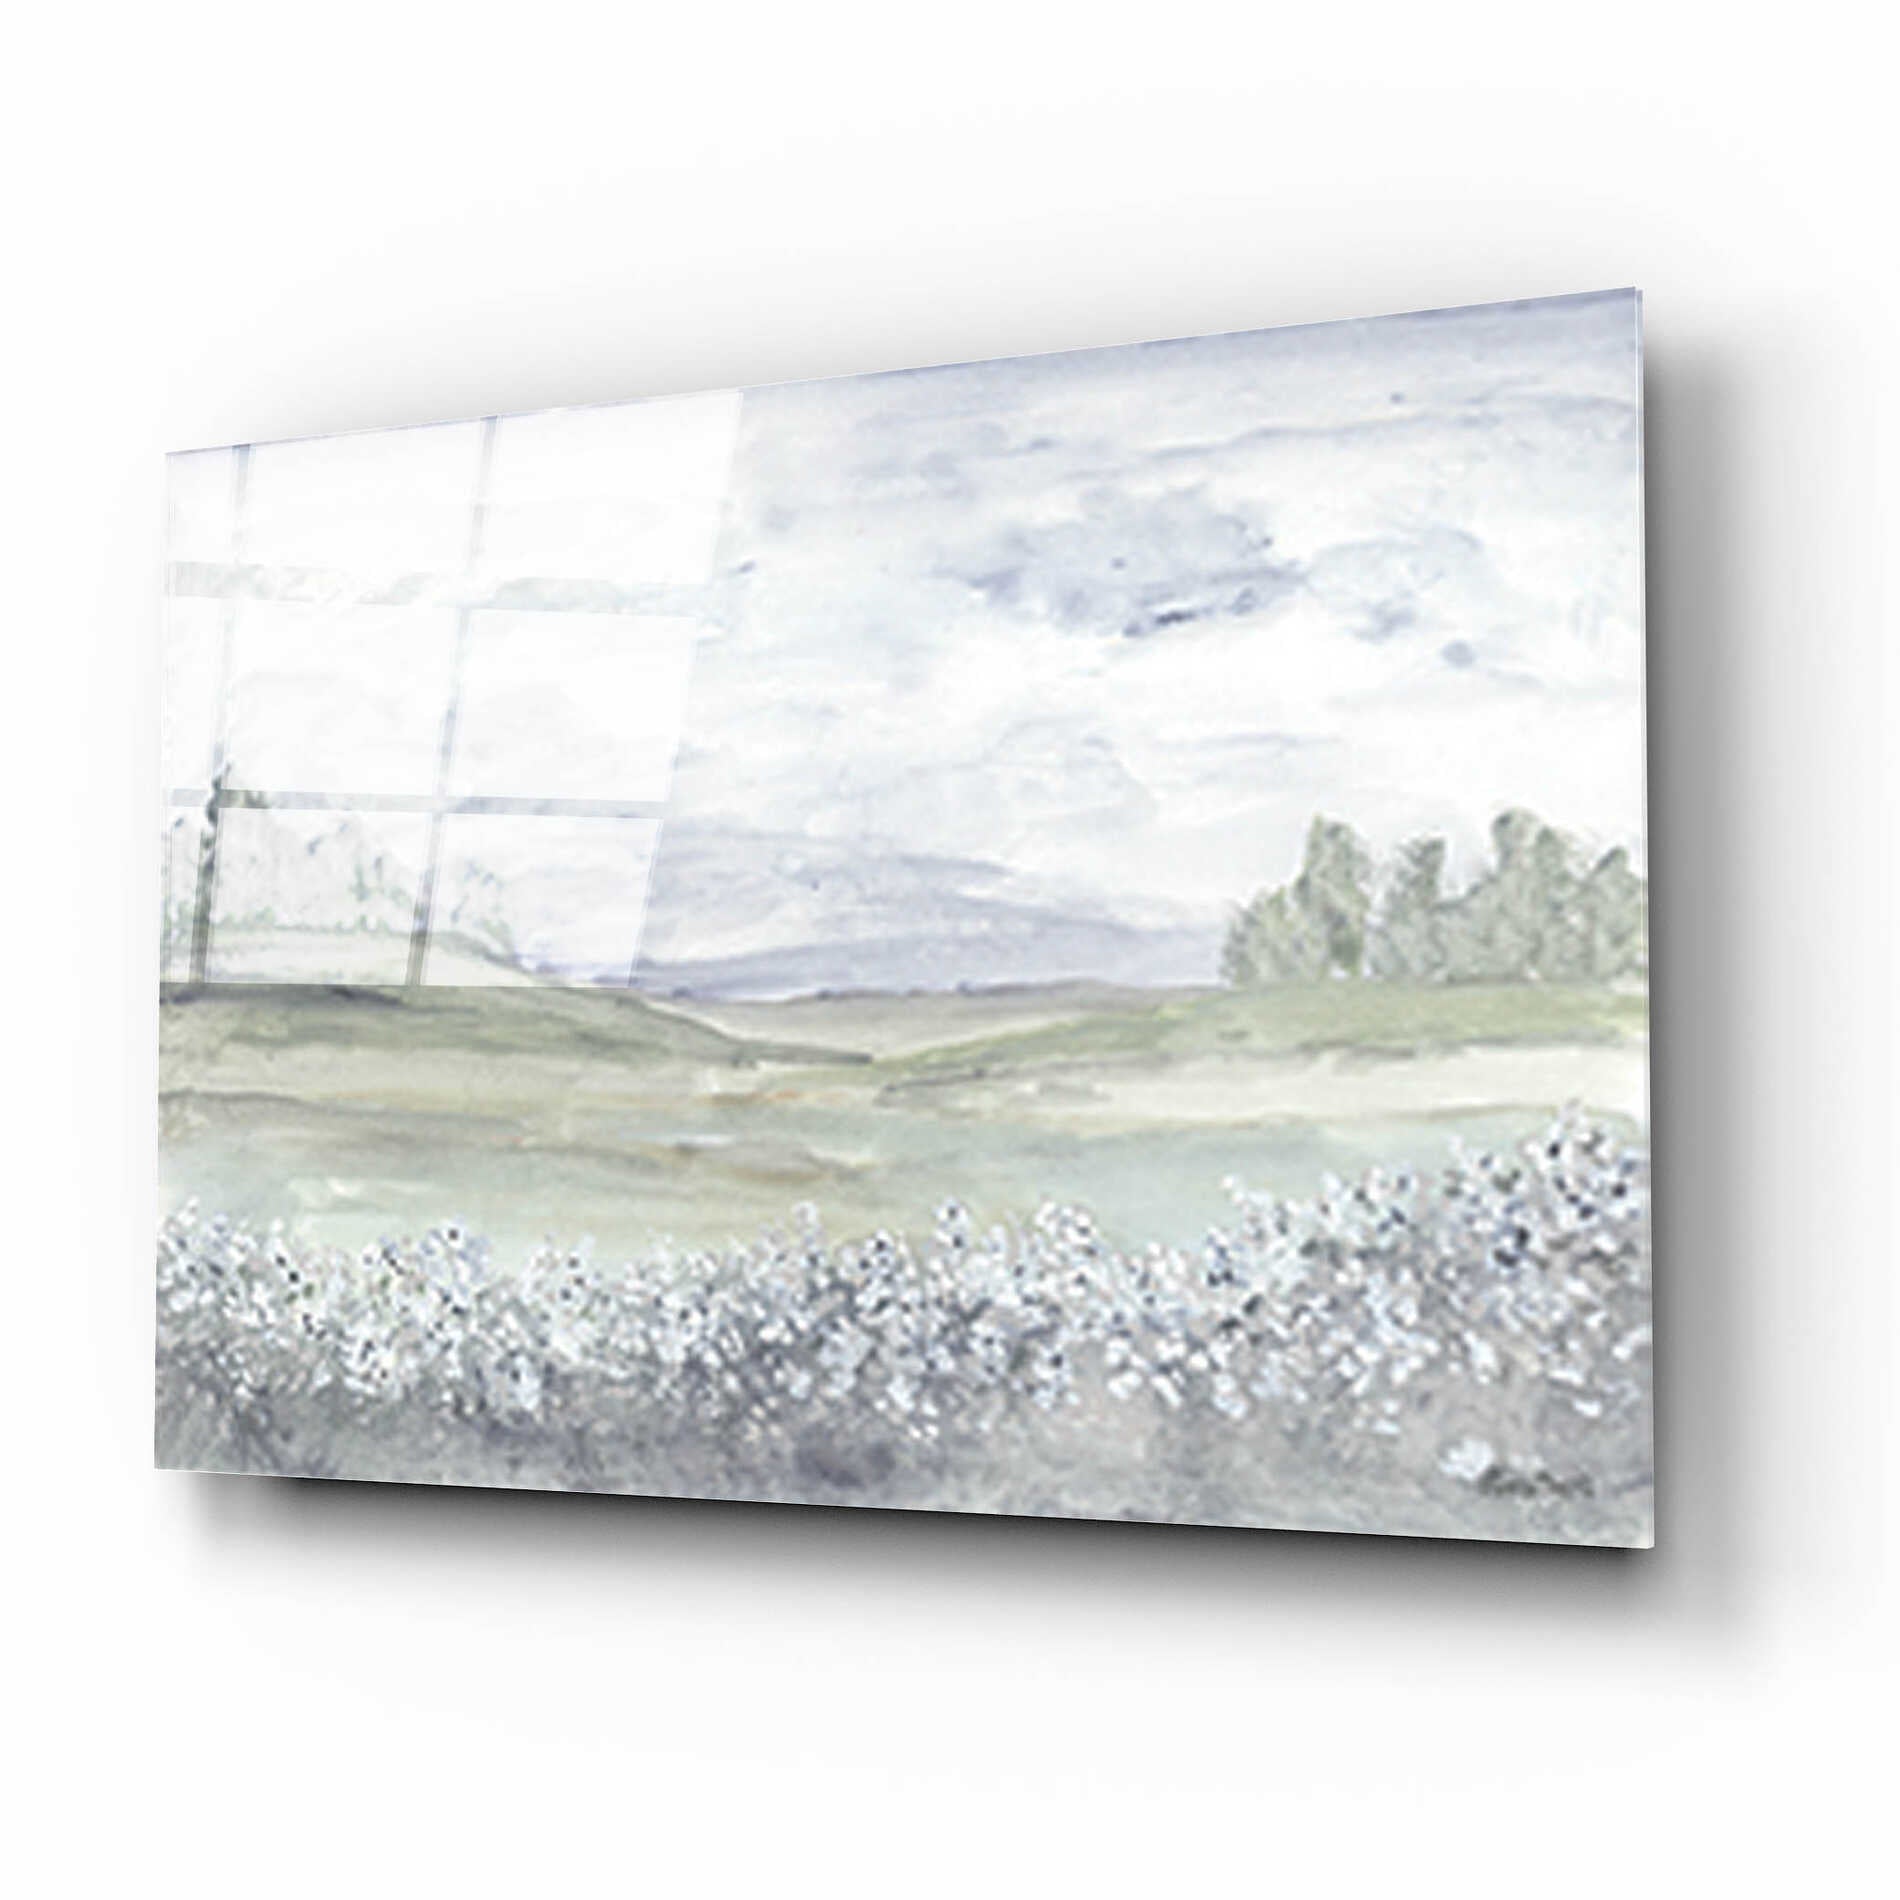 Epic Art 'Meadow' by Roey Ebert, Acrylic Glass Wall Art,16x12